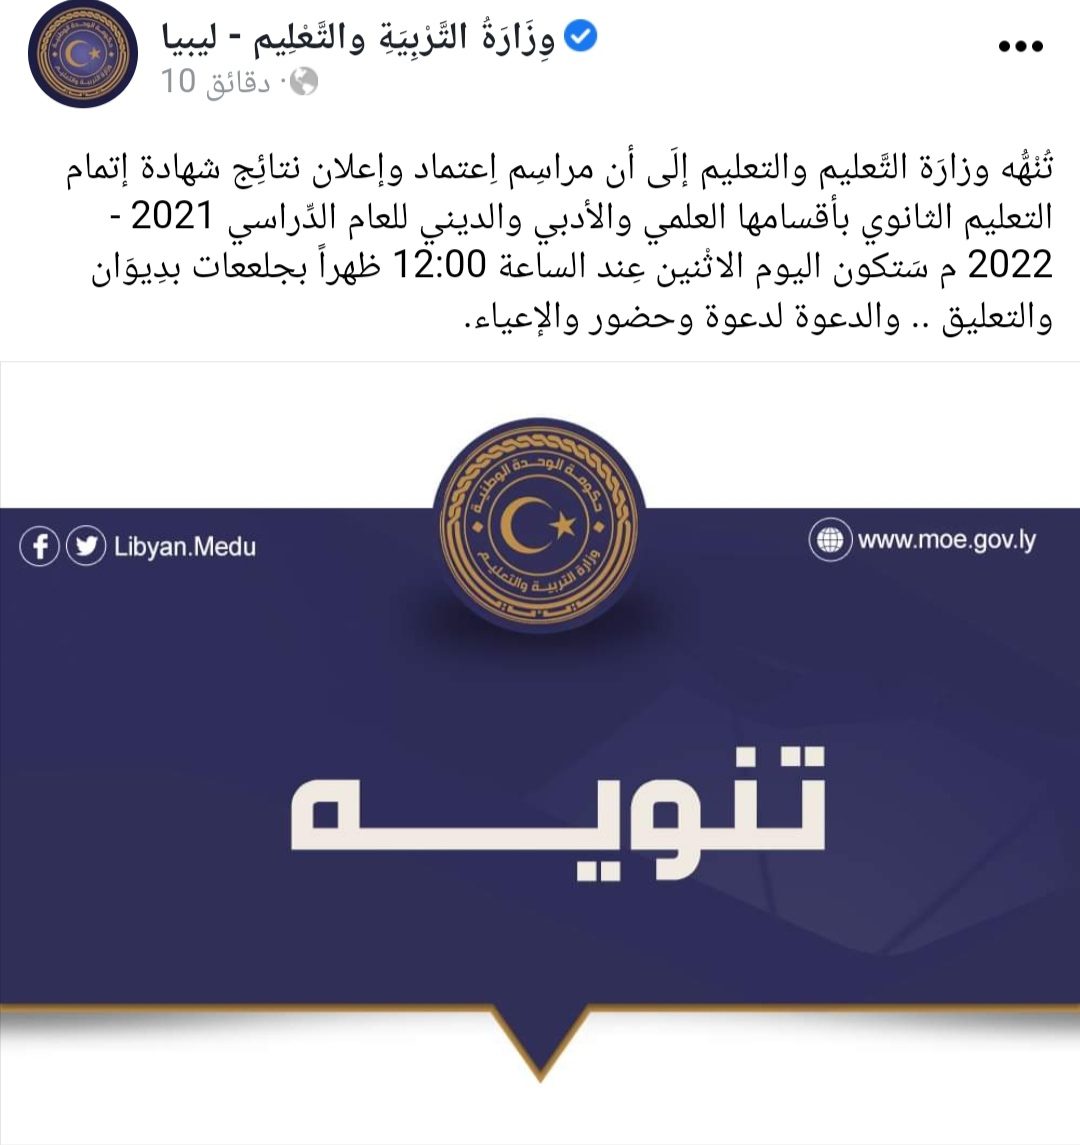 IMG 20221010 100449 - "استعلم الآن" رابط نتيجة شهادة الثانوية ليبيا 2022 برقم الجلوس عبر موقع الوزارة الرسمي